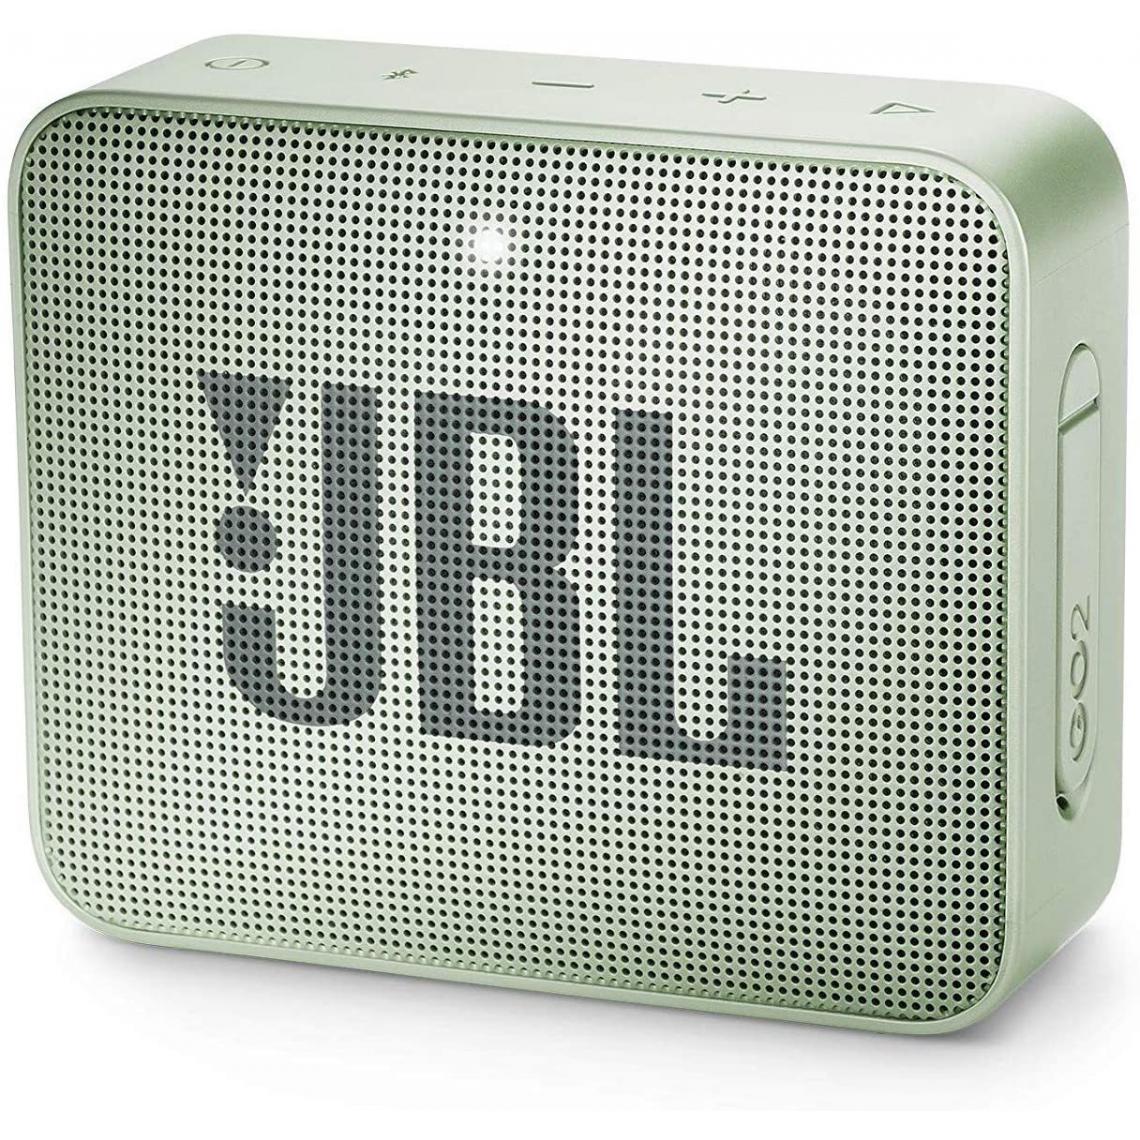 Chrono - Mini Enceinte Bluetooth portable - Étanche pour piscine & plage IPX7 - Autonomie 12hrs - Qualité audio JBL,Menthe - Enceintes Hifi